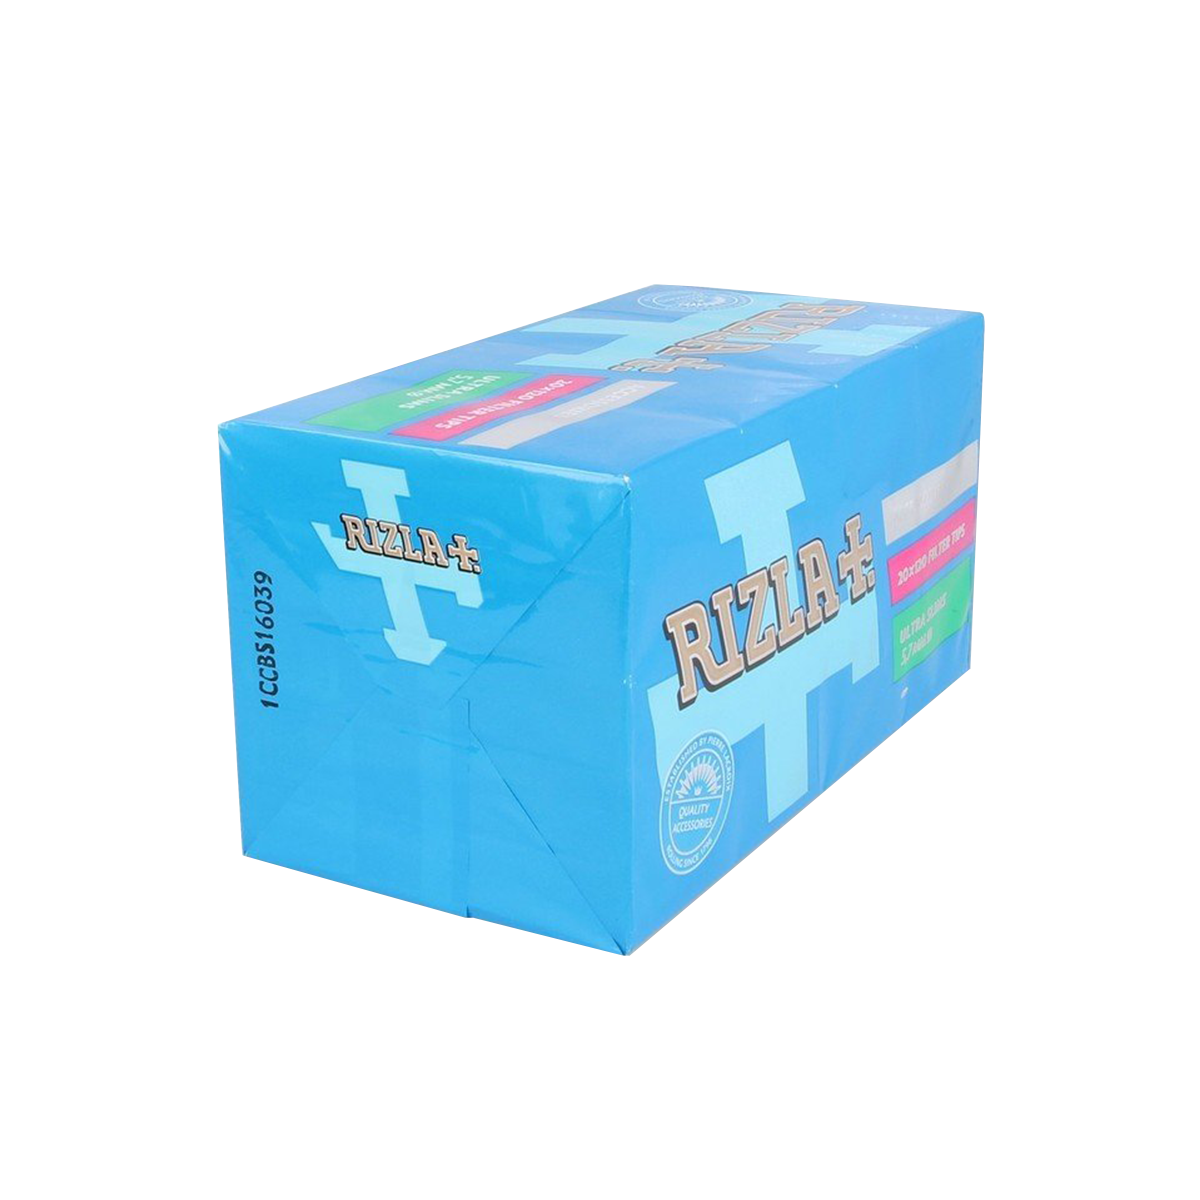 Rizla ultra slim filter (20x pack)